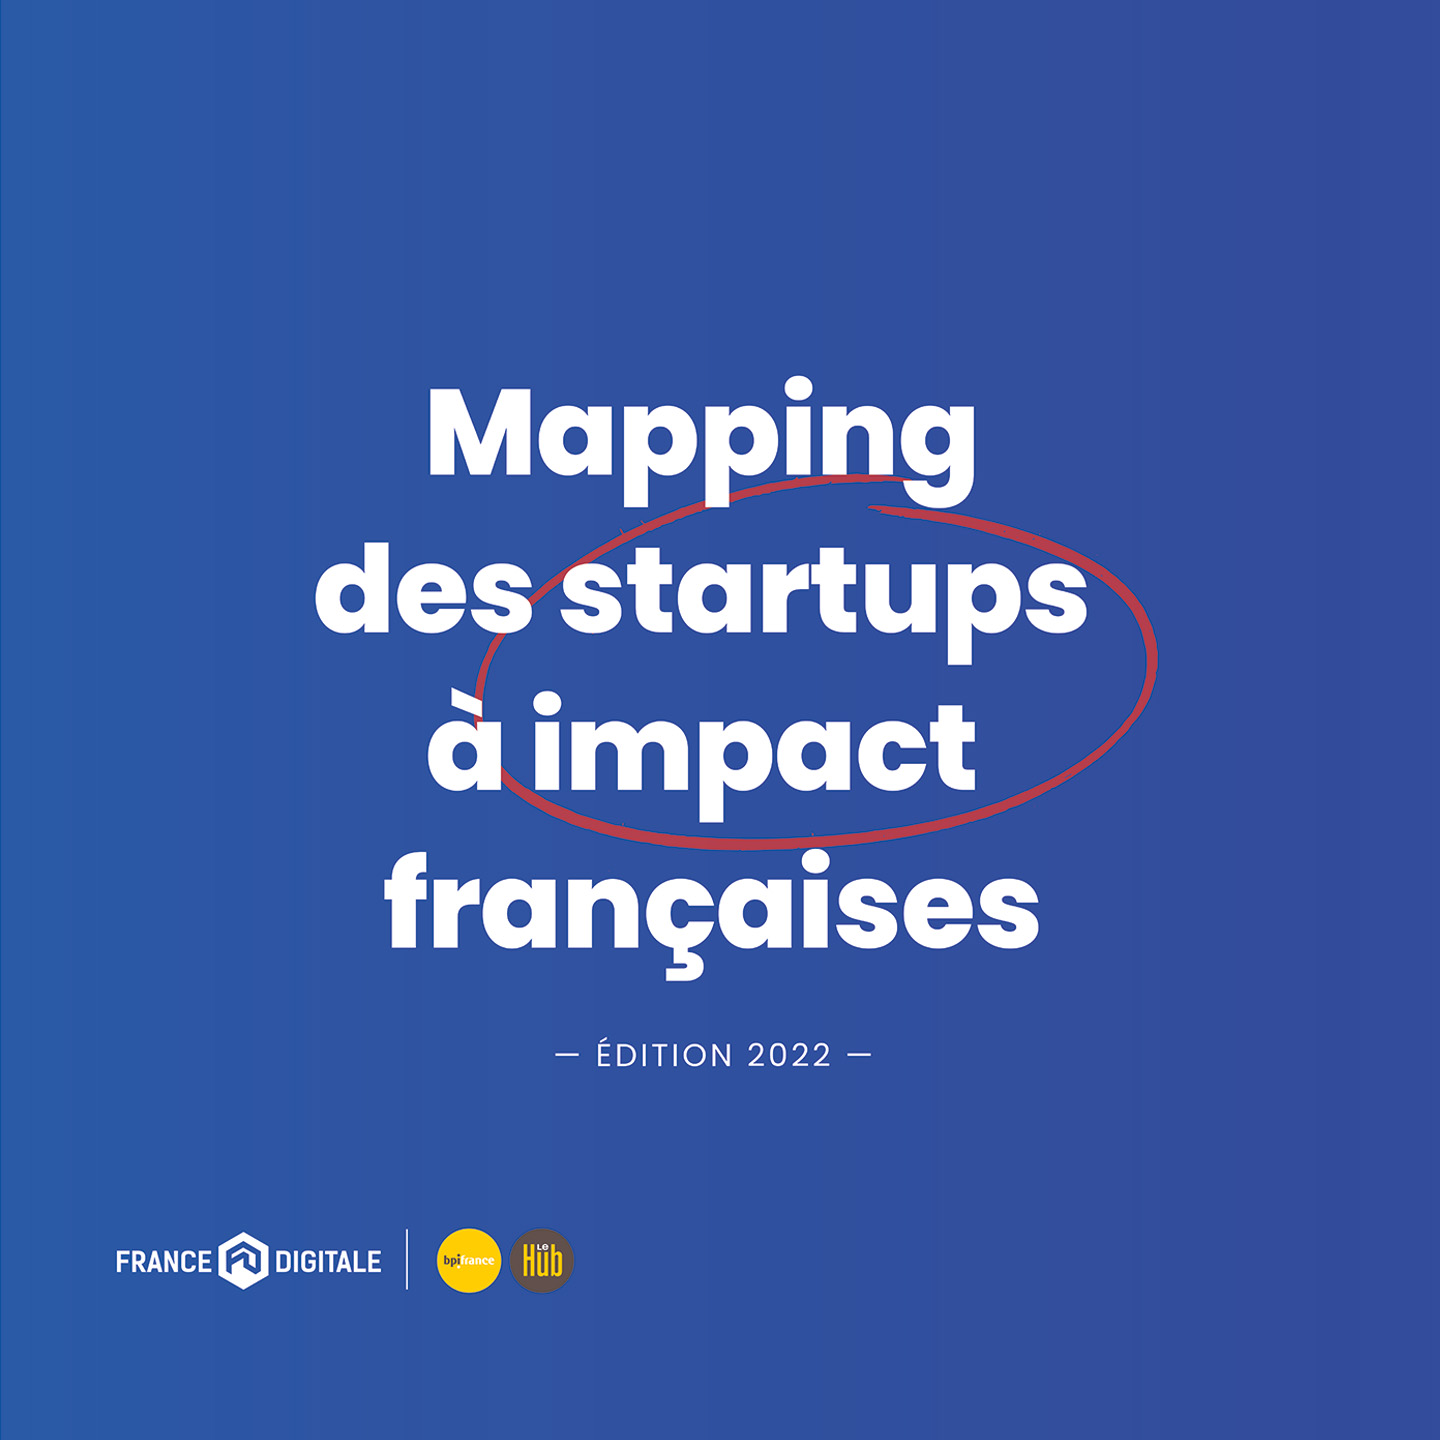 Dilepix dans le mapping 2022 des startups françaises à impact